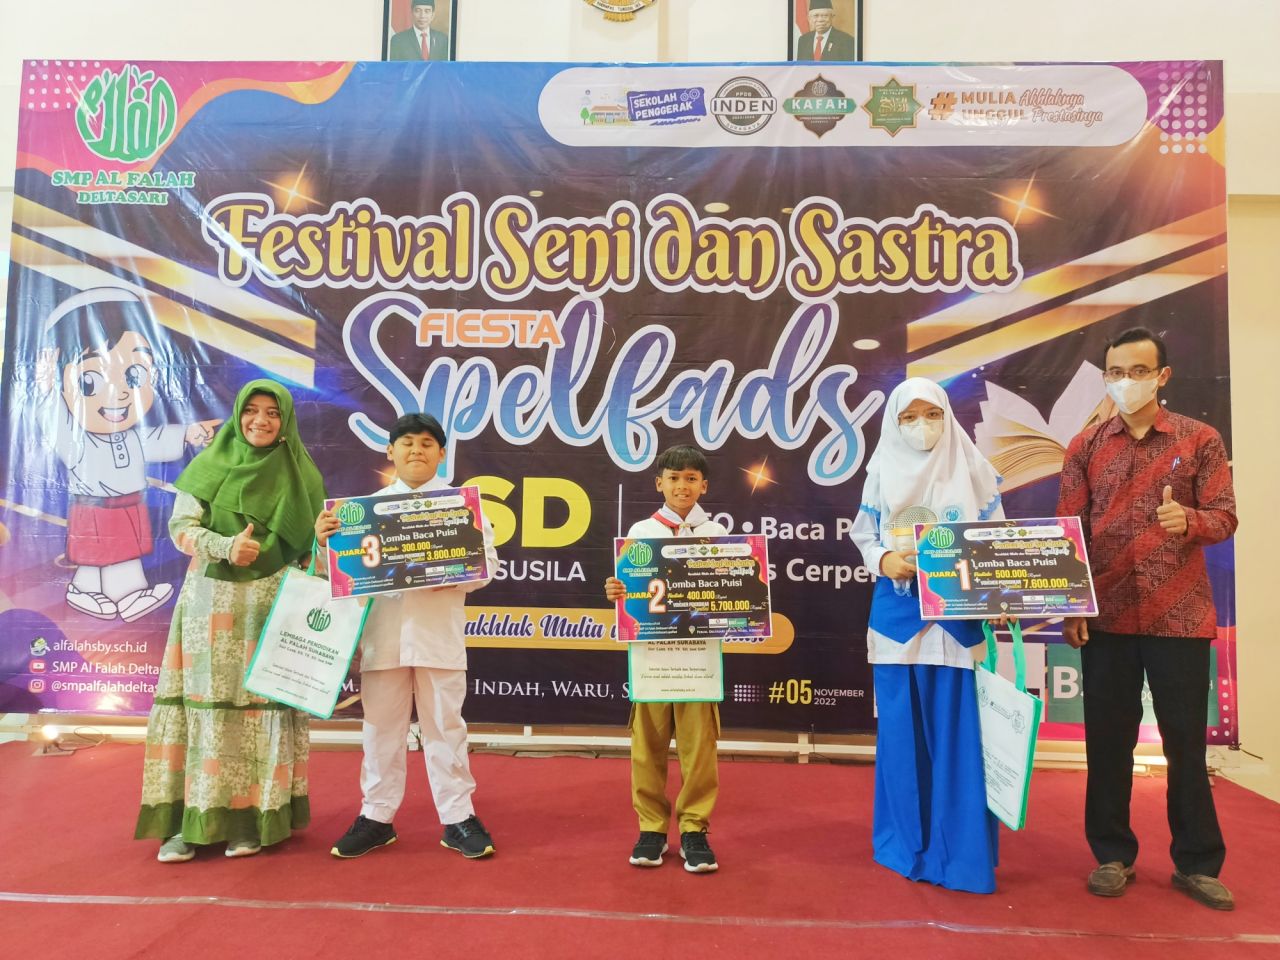 SMP Al Falah Deltasari Sidoarjo Gelar Fiesta Spelfads, Ini Daftar Juaranya